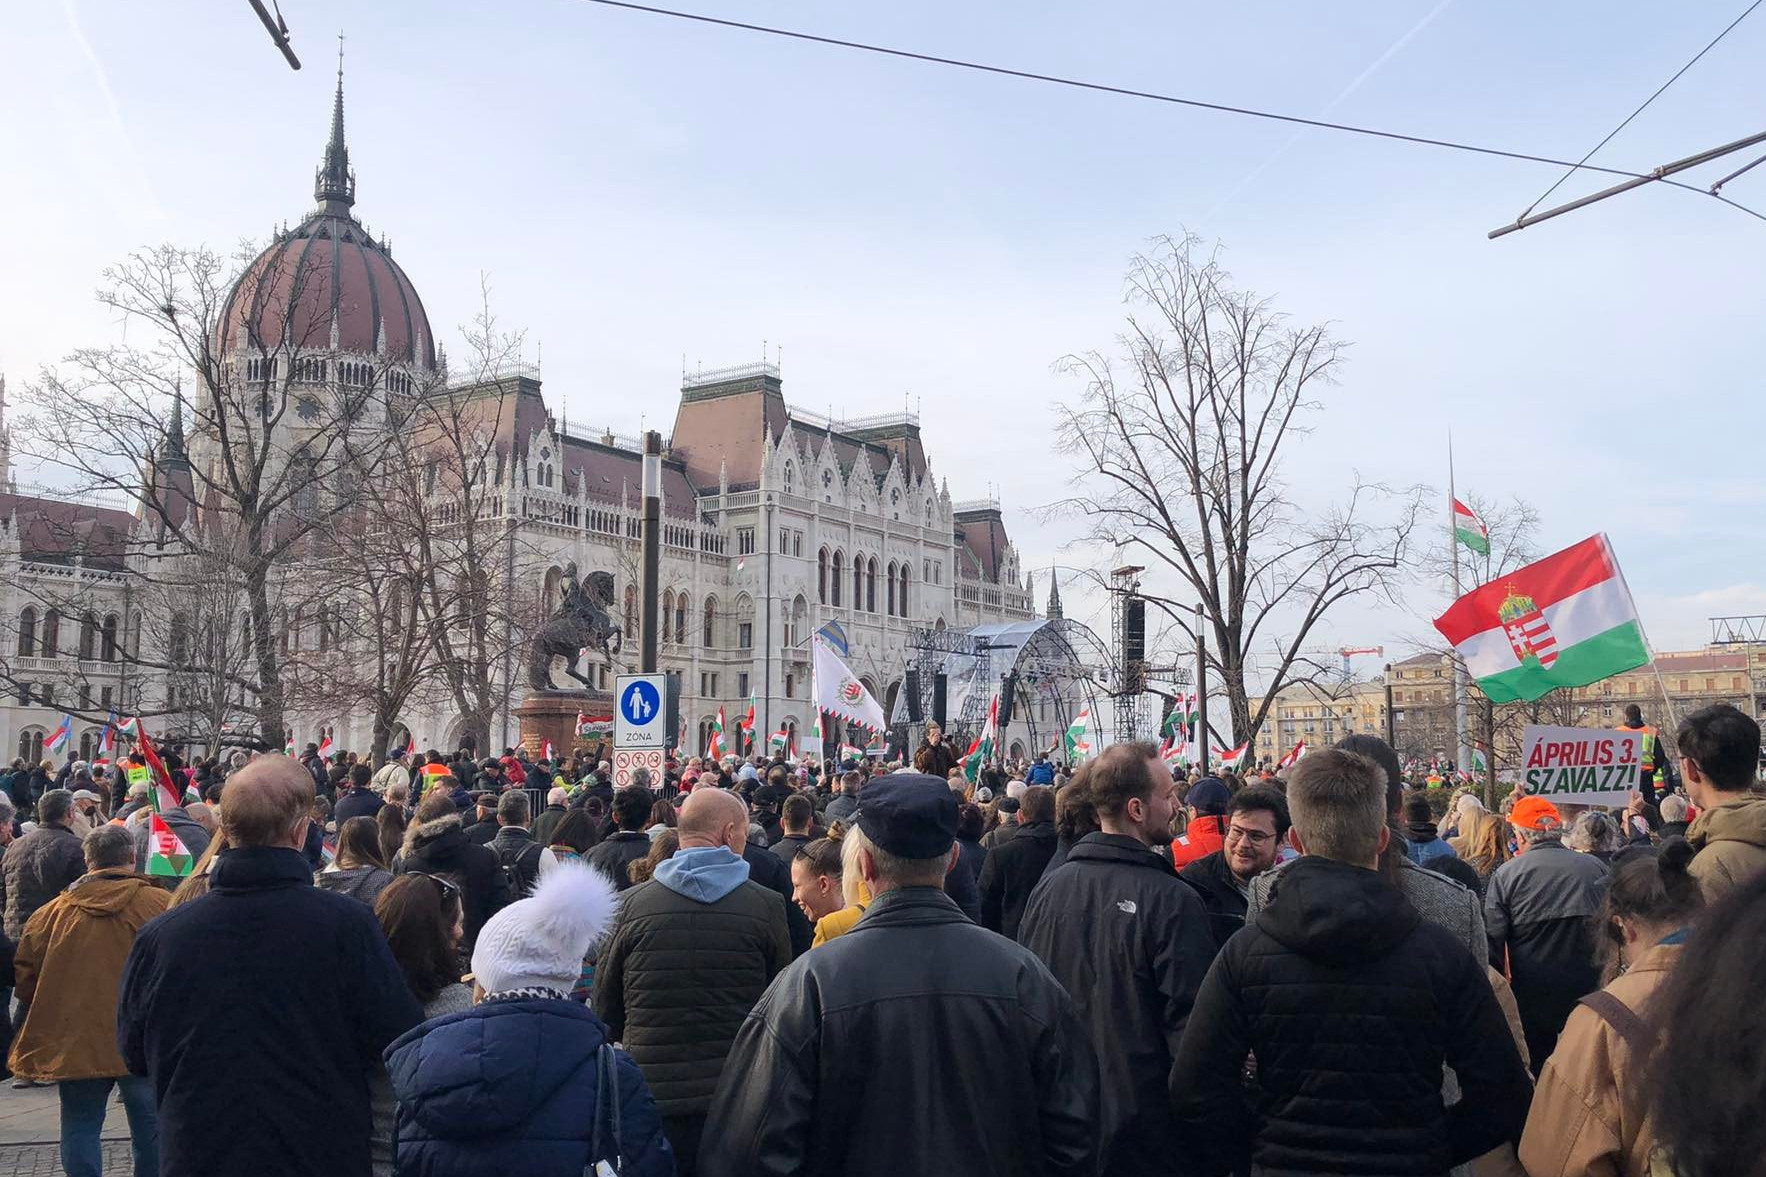 Talán még sohasem néztünk ki olyan jól, mint ma - jelentette ki Orbán Viktor Budapesten, a Kossuth téren összegyűltekhez szólva